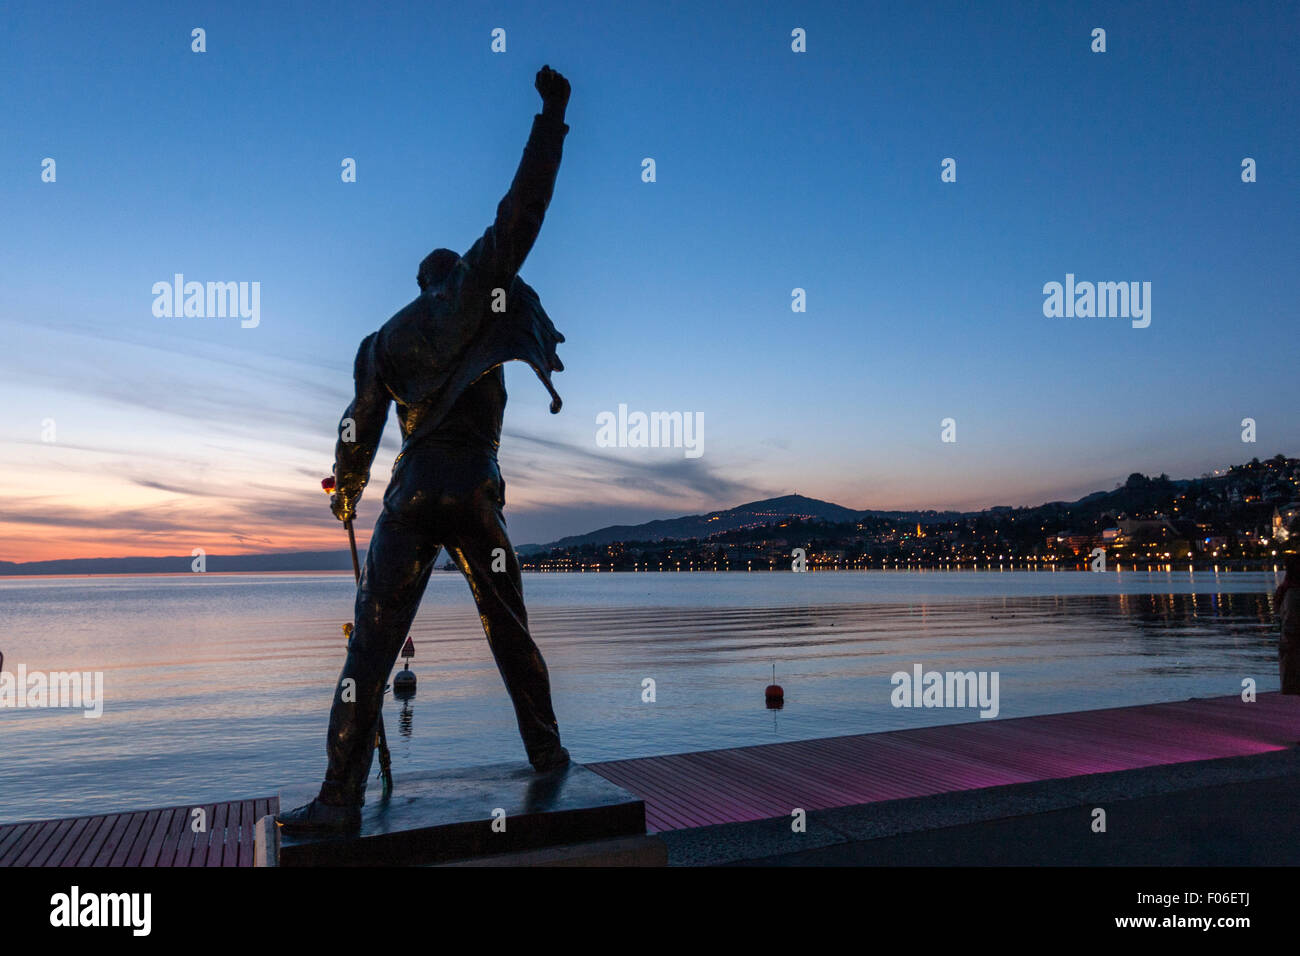 Statue de Freddie Mercury par la République tchèque Irena Sedlecka, artiste de la place du marché en face du lac de Genève. Montreux Banque D'Images